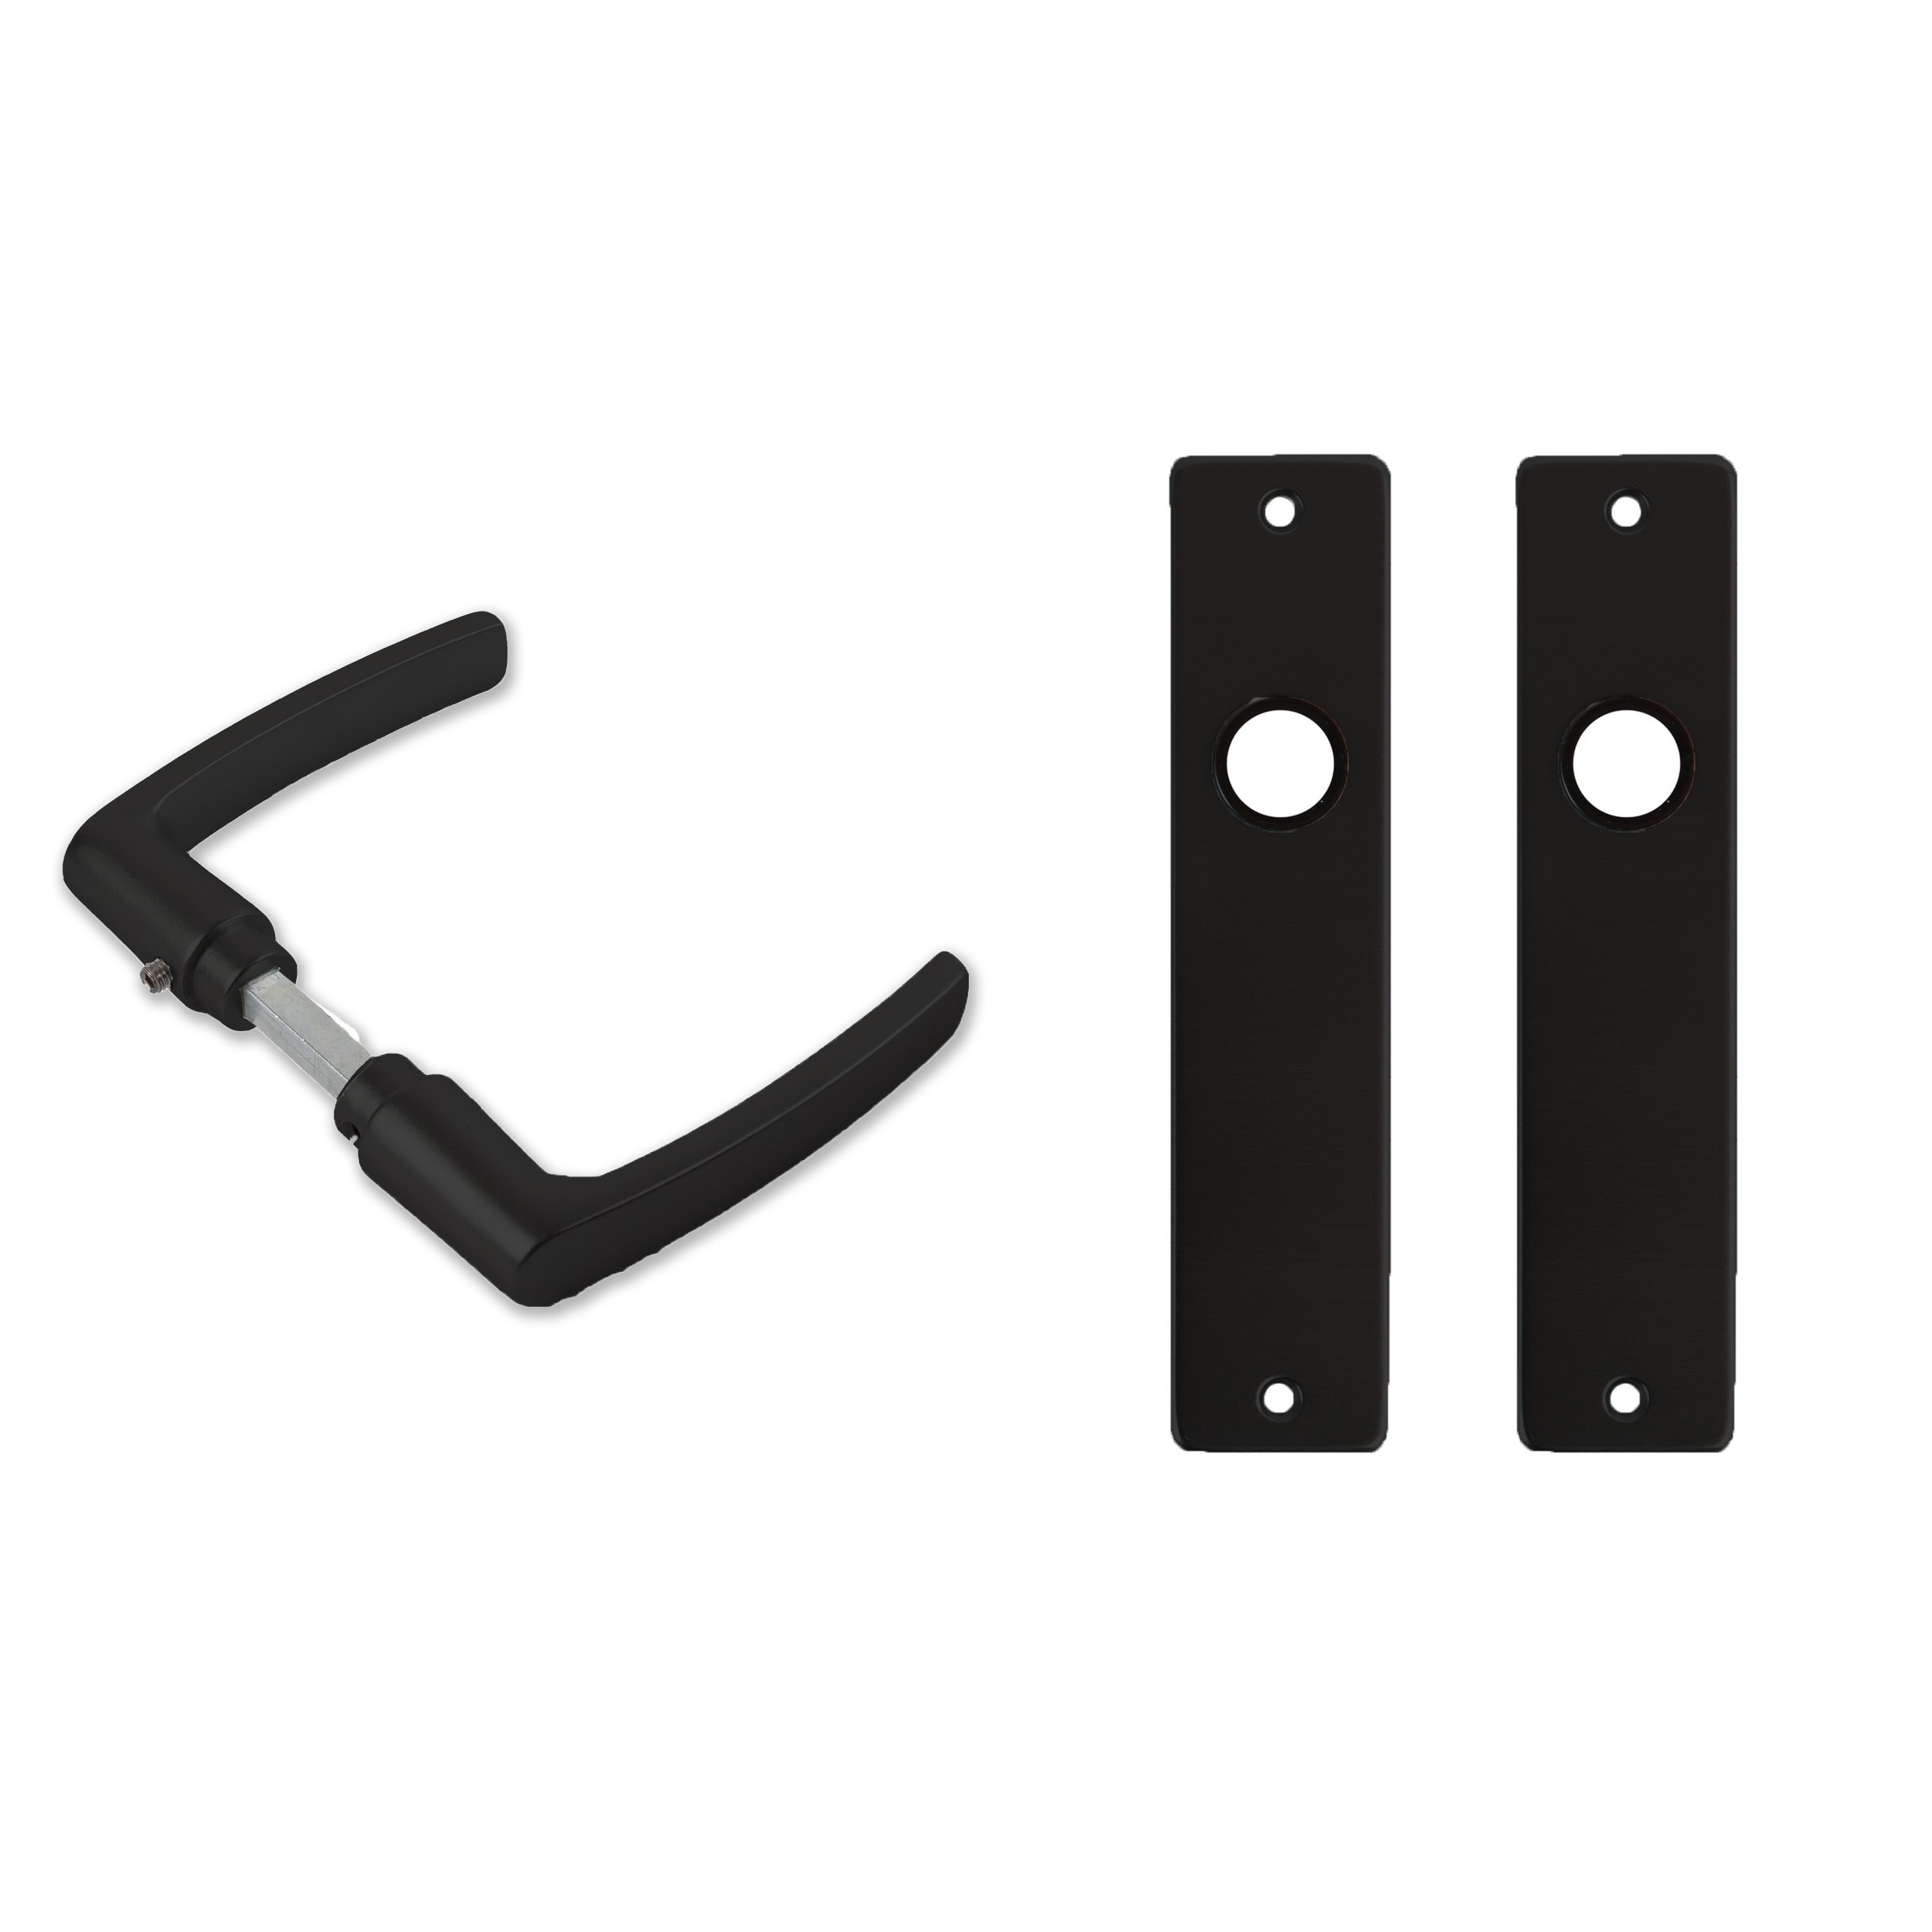 3x paar deurkrukset-deurgarnituur zwart met zwarte blokmodel deurklinken en deurschilden